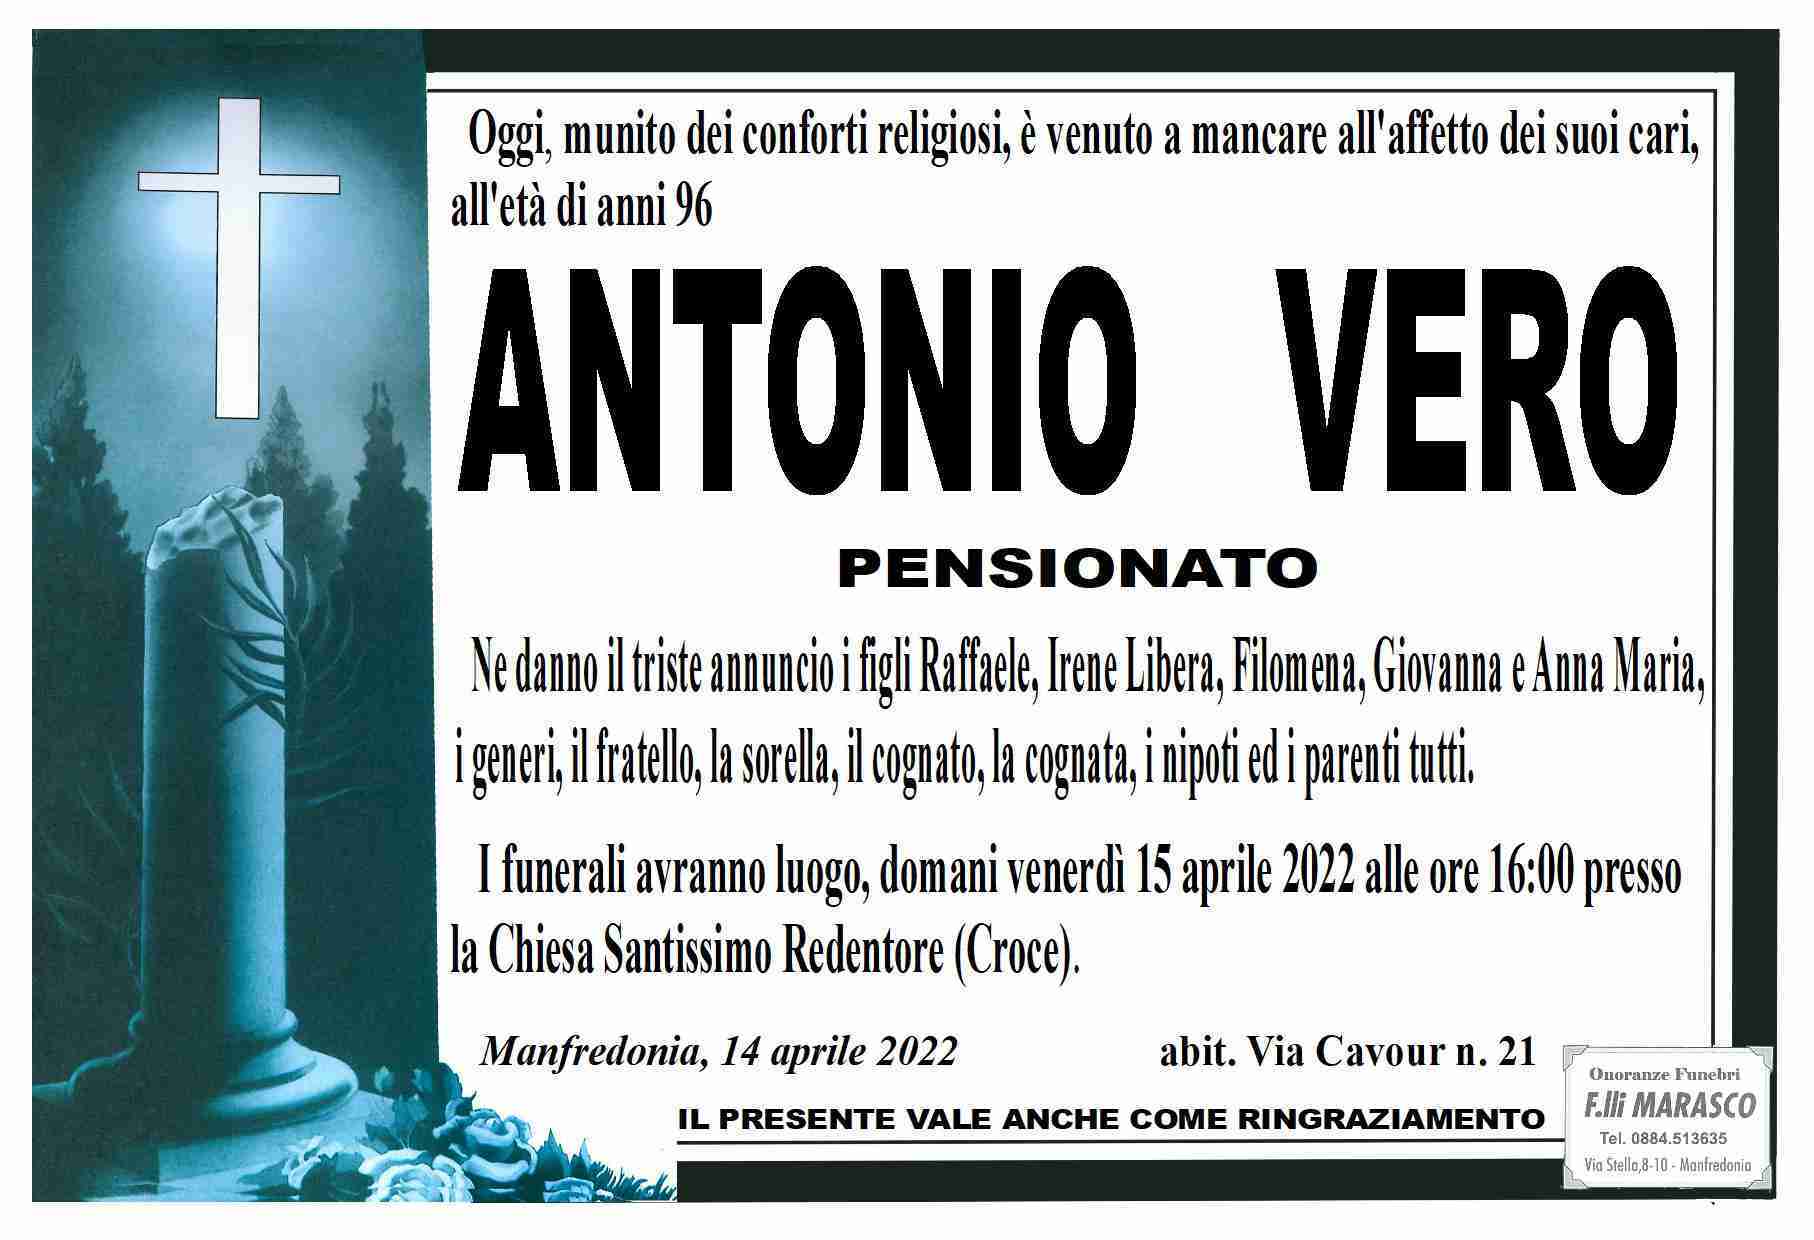 Antonio Vero